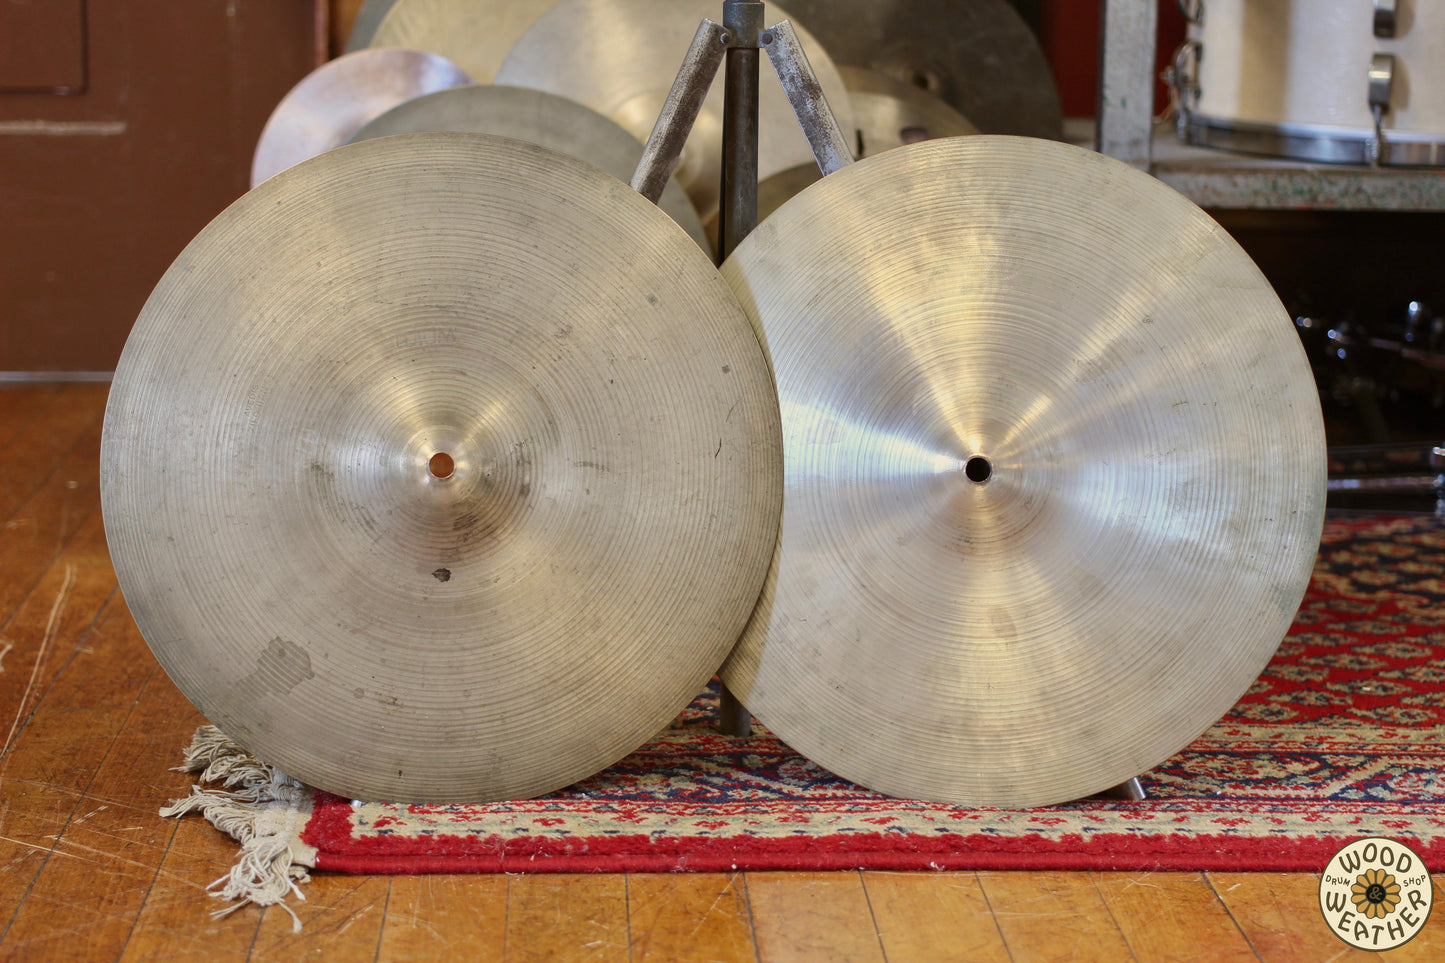 1960s A. Zildjian 14" Medium Hi-Hat Cymbals 755/780g